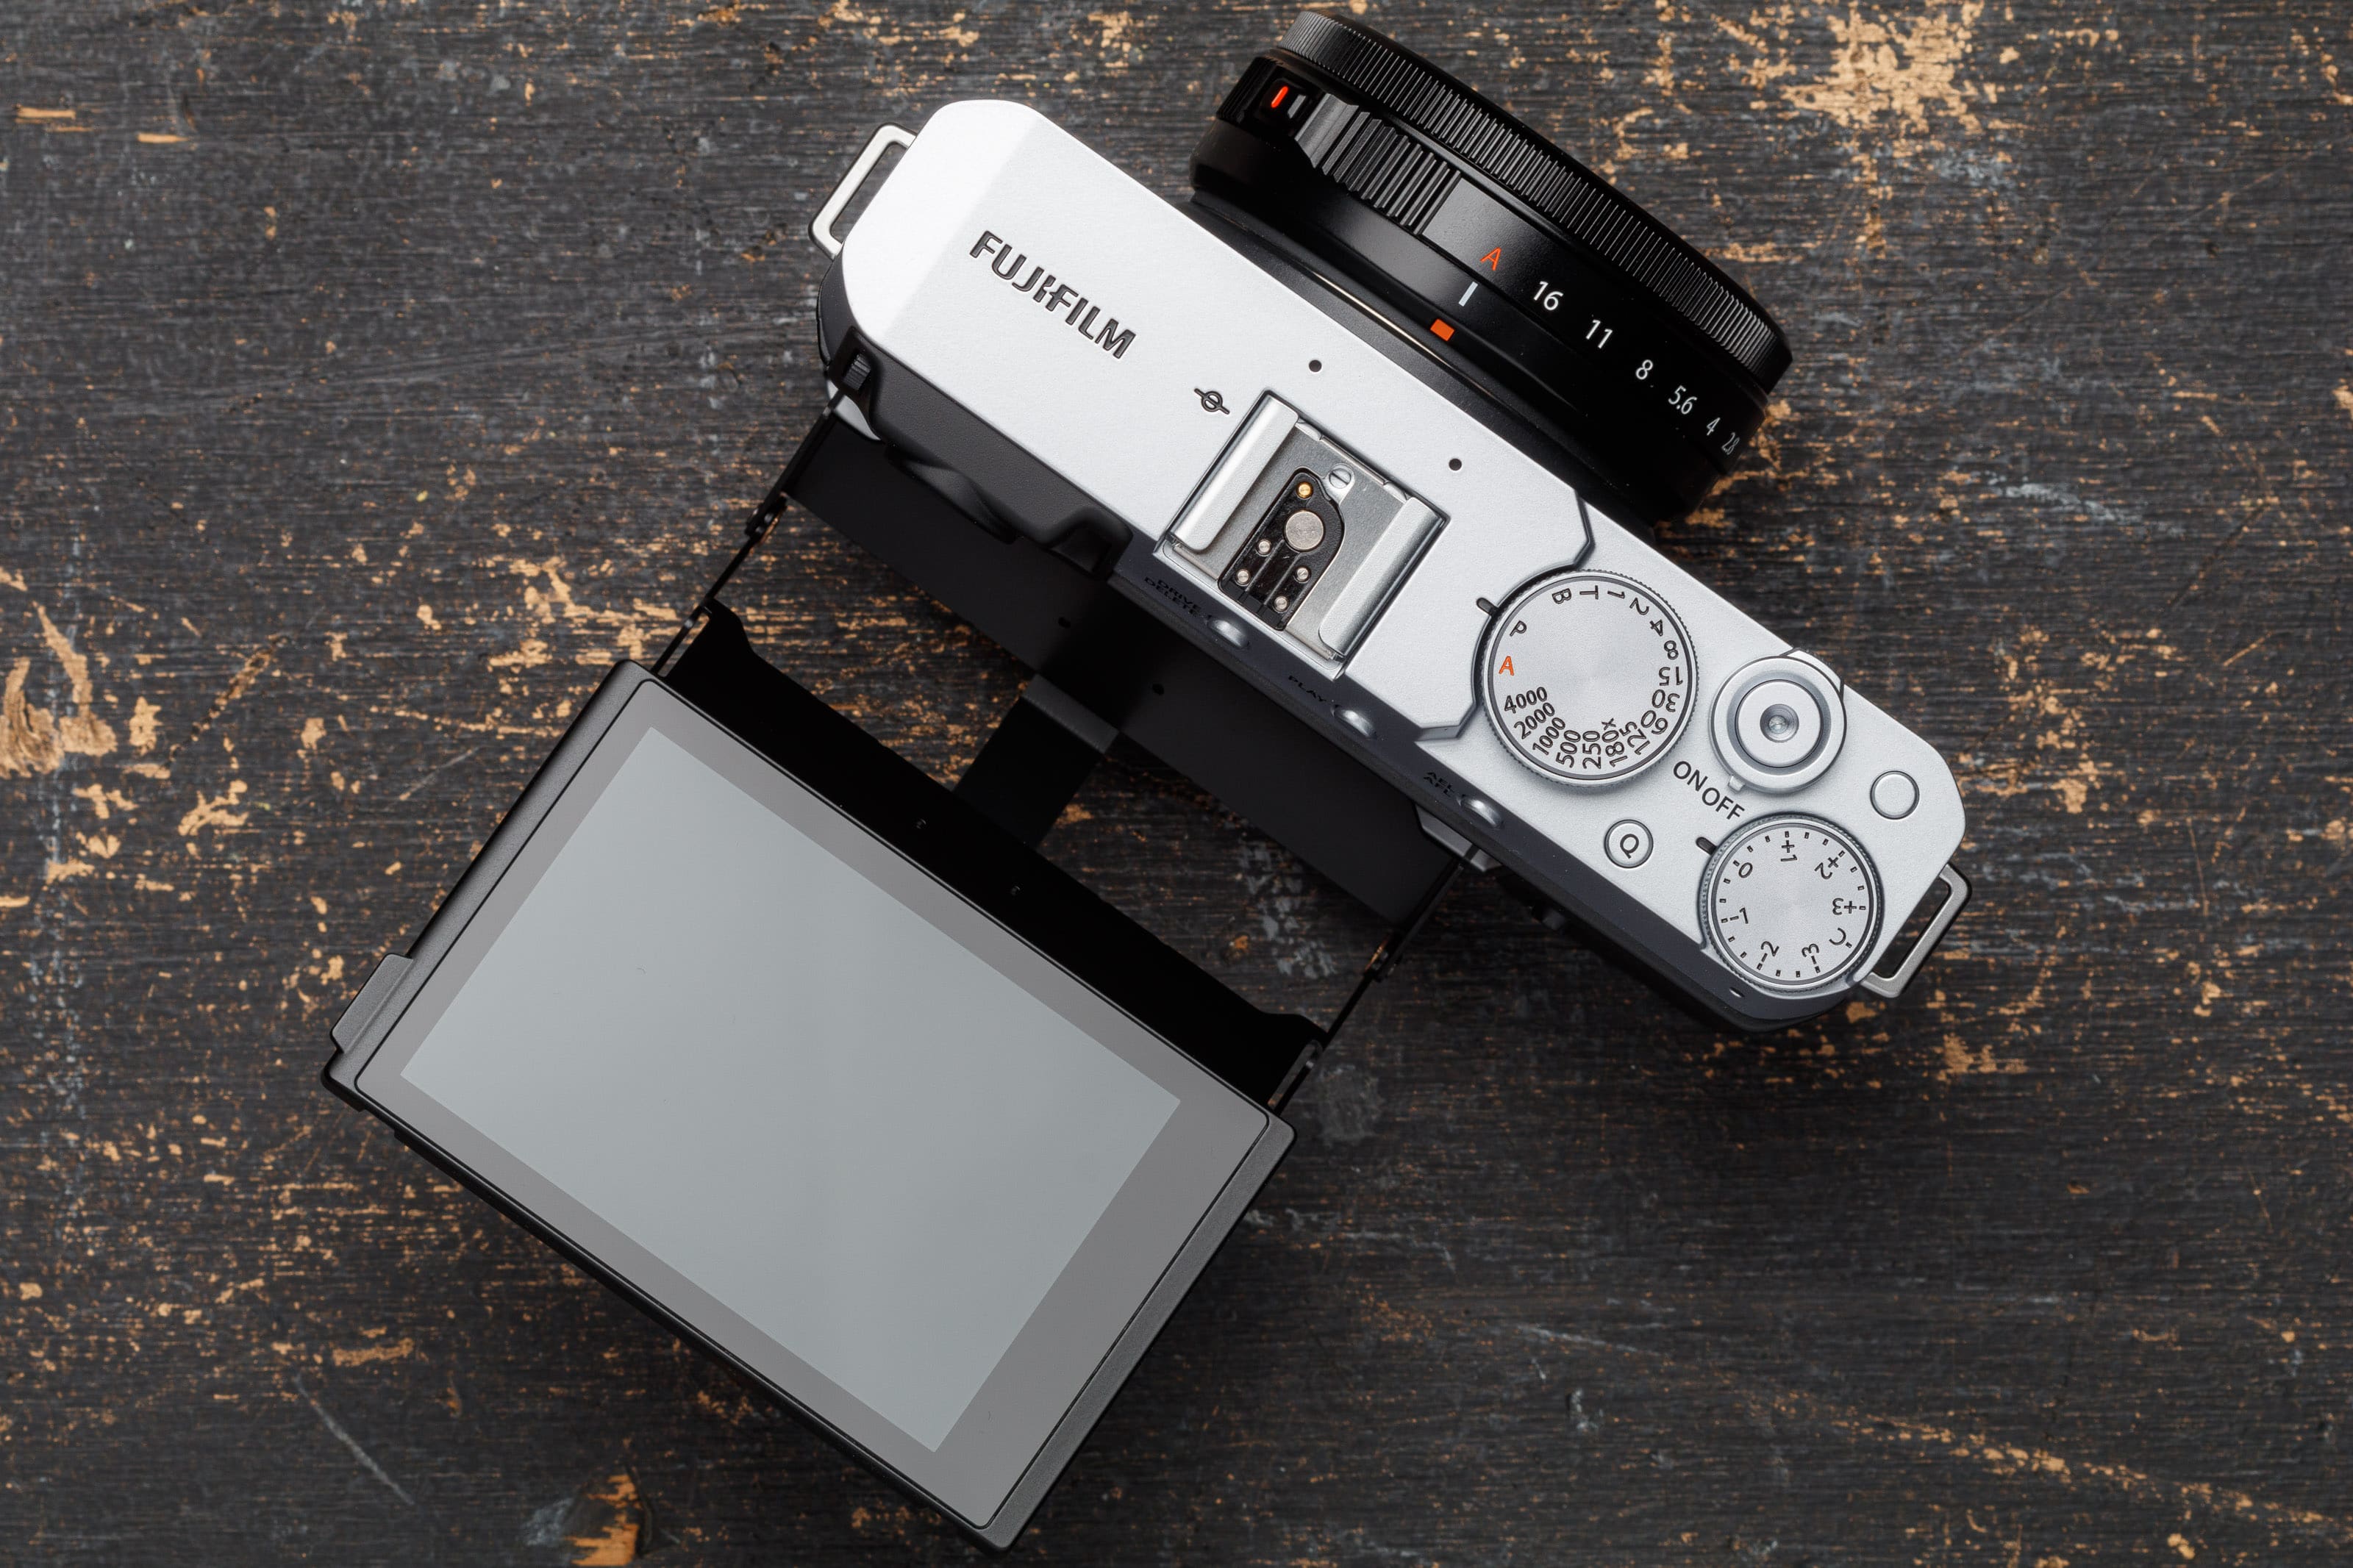 Fujifilm X-E4 ra mắt với hàng loạt cải tiến, là chiếc máy ảnh X Series nhẹ nhất và nhỏ nhất hiện tại